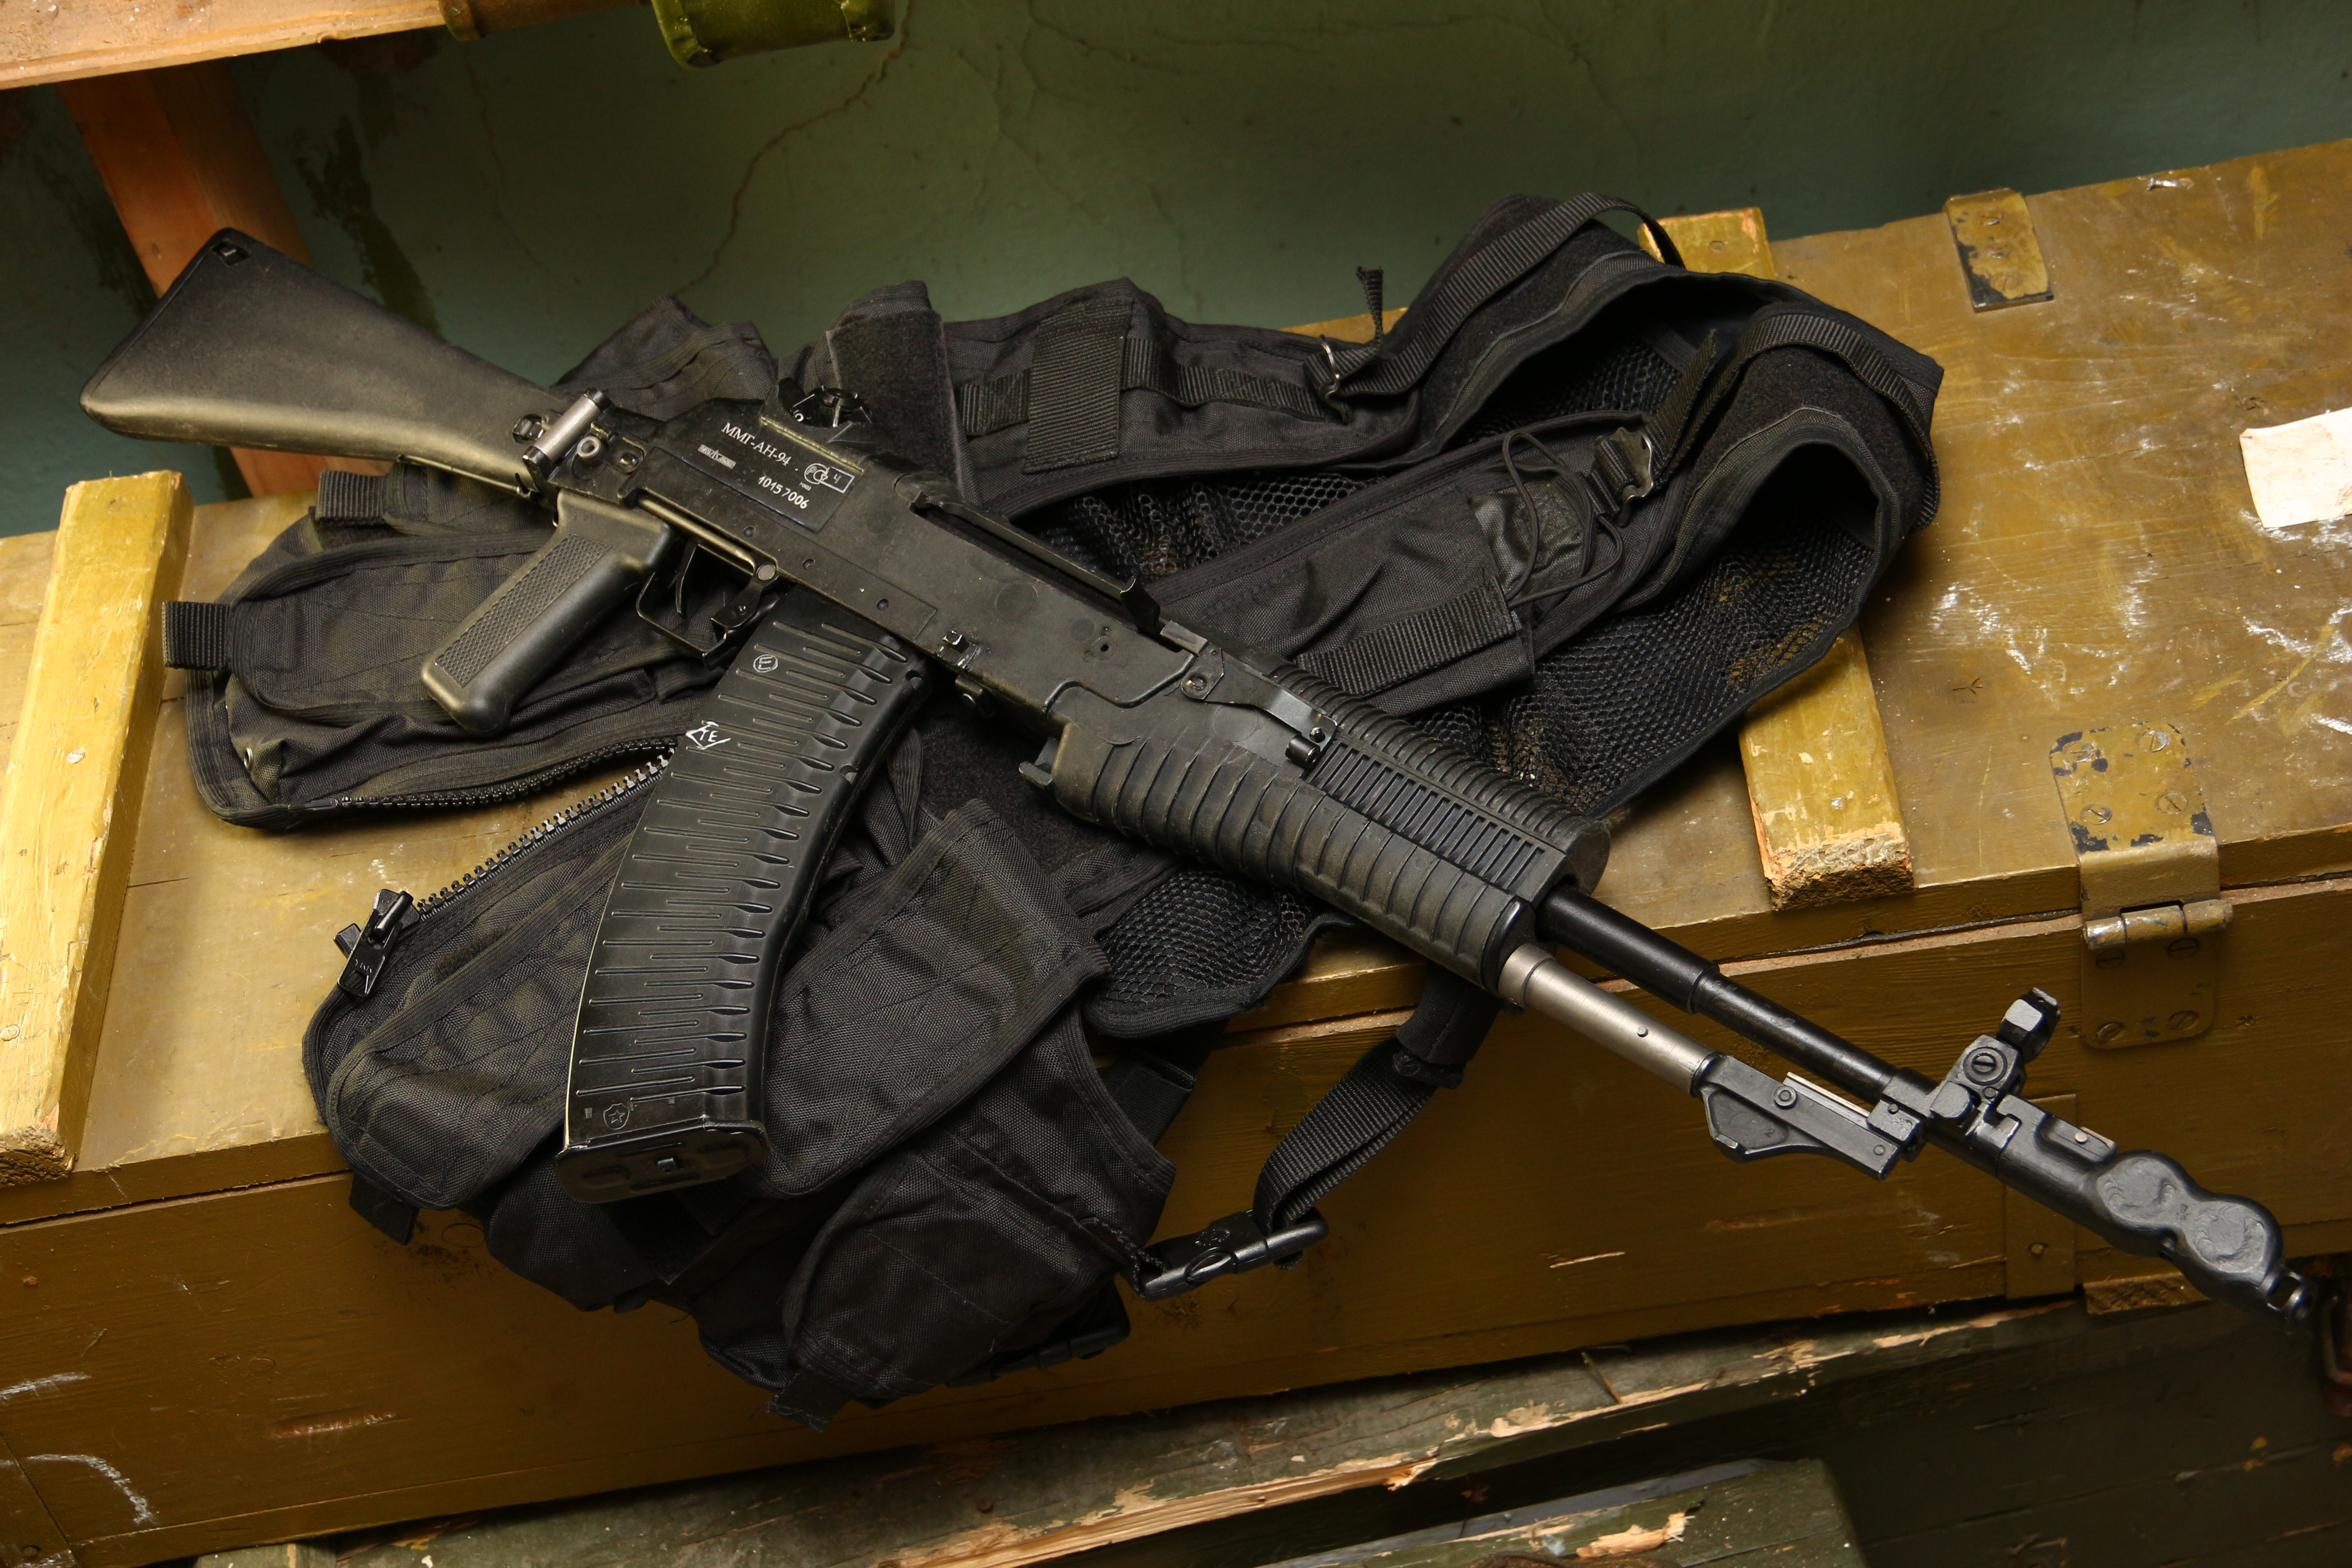 General 5184x3456 AN-94 Abakan weapon osob.store assault rifle Russian/Soviet firearms